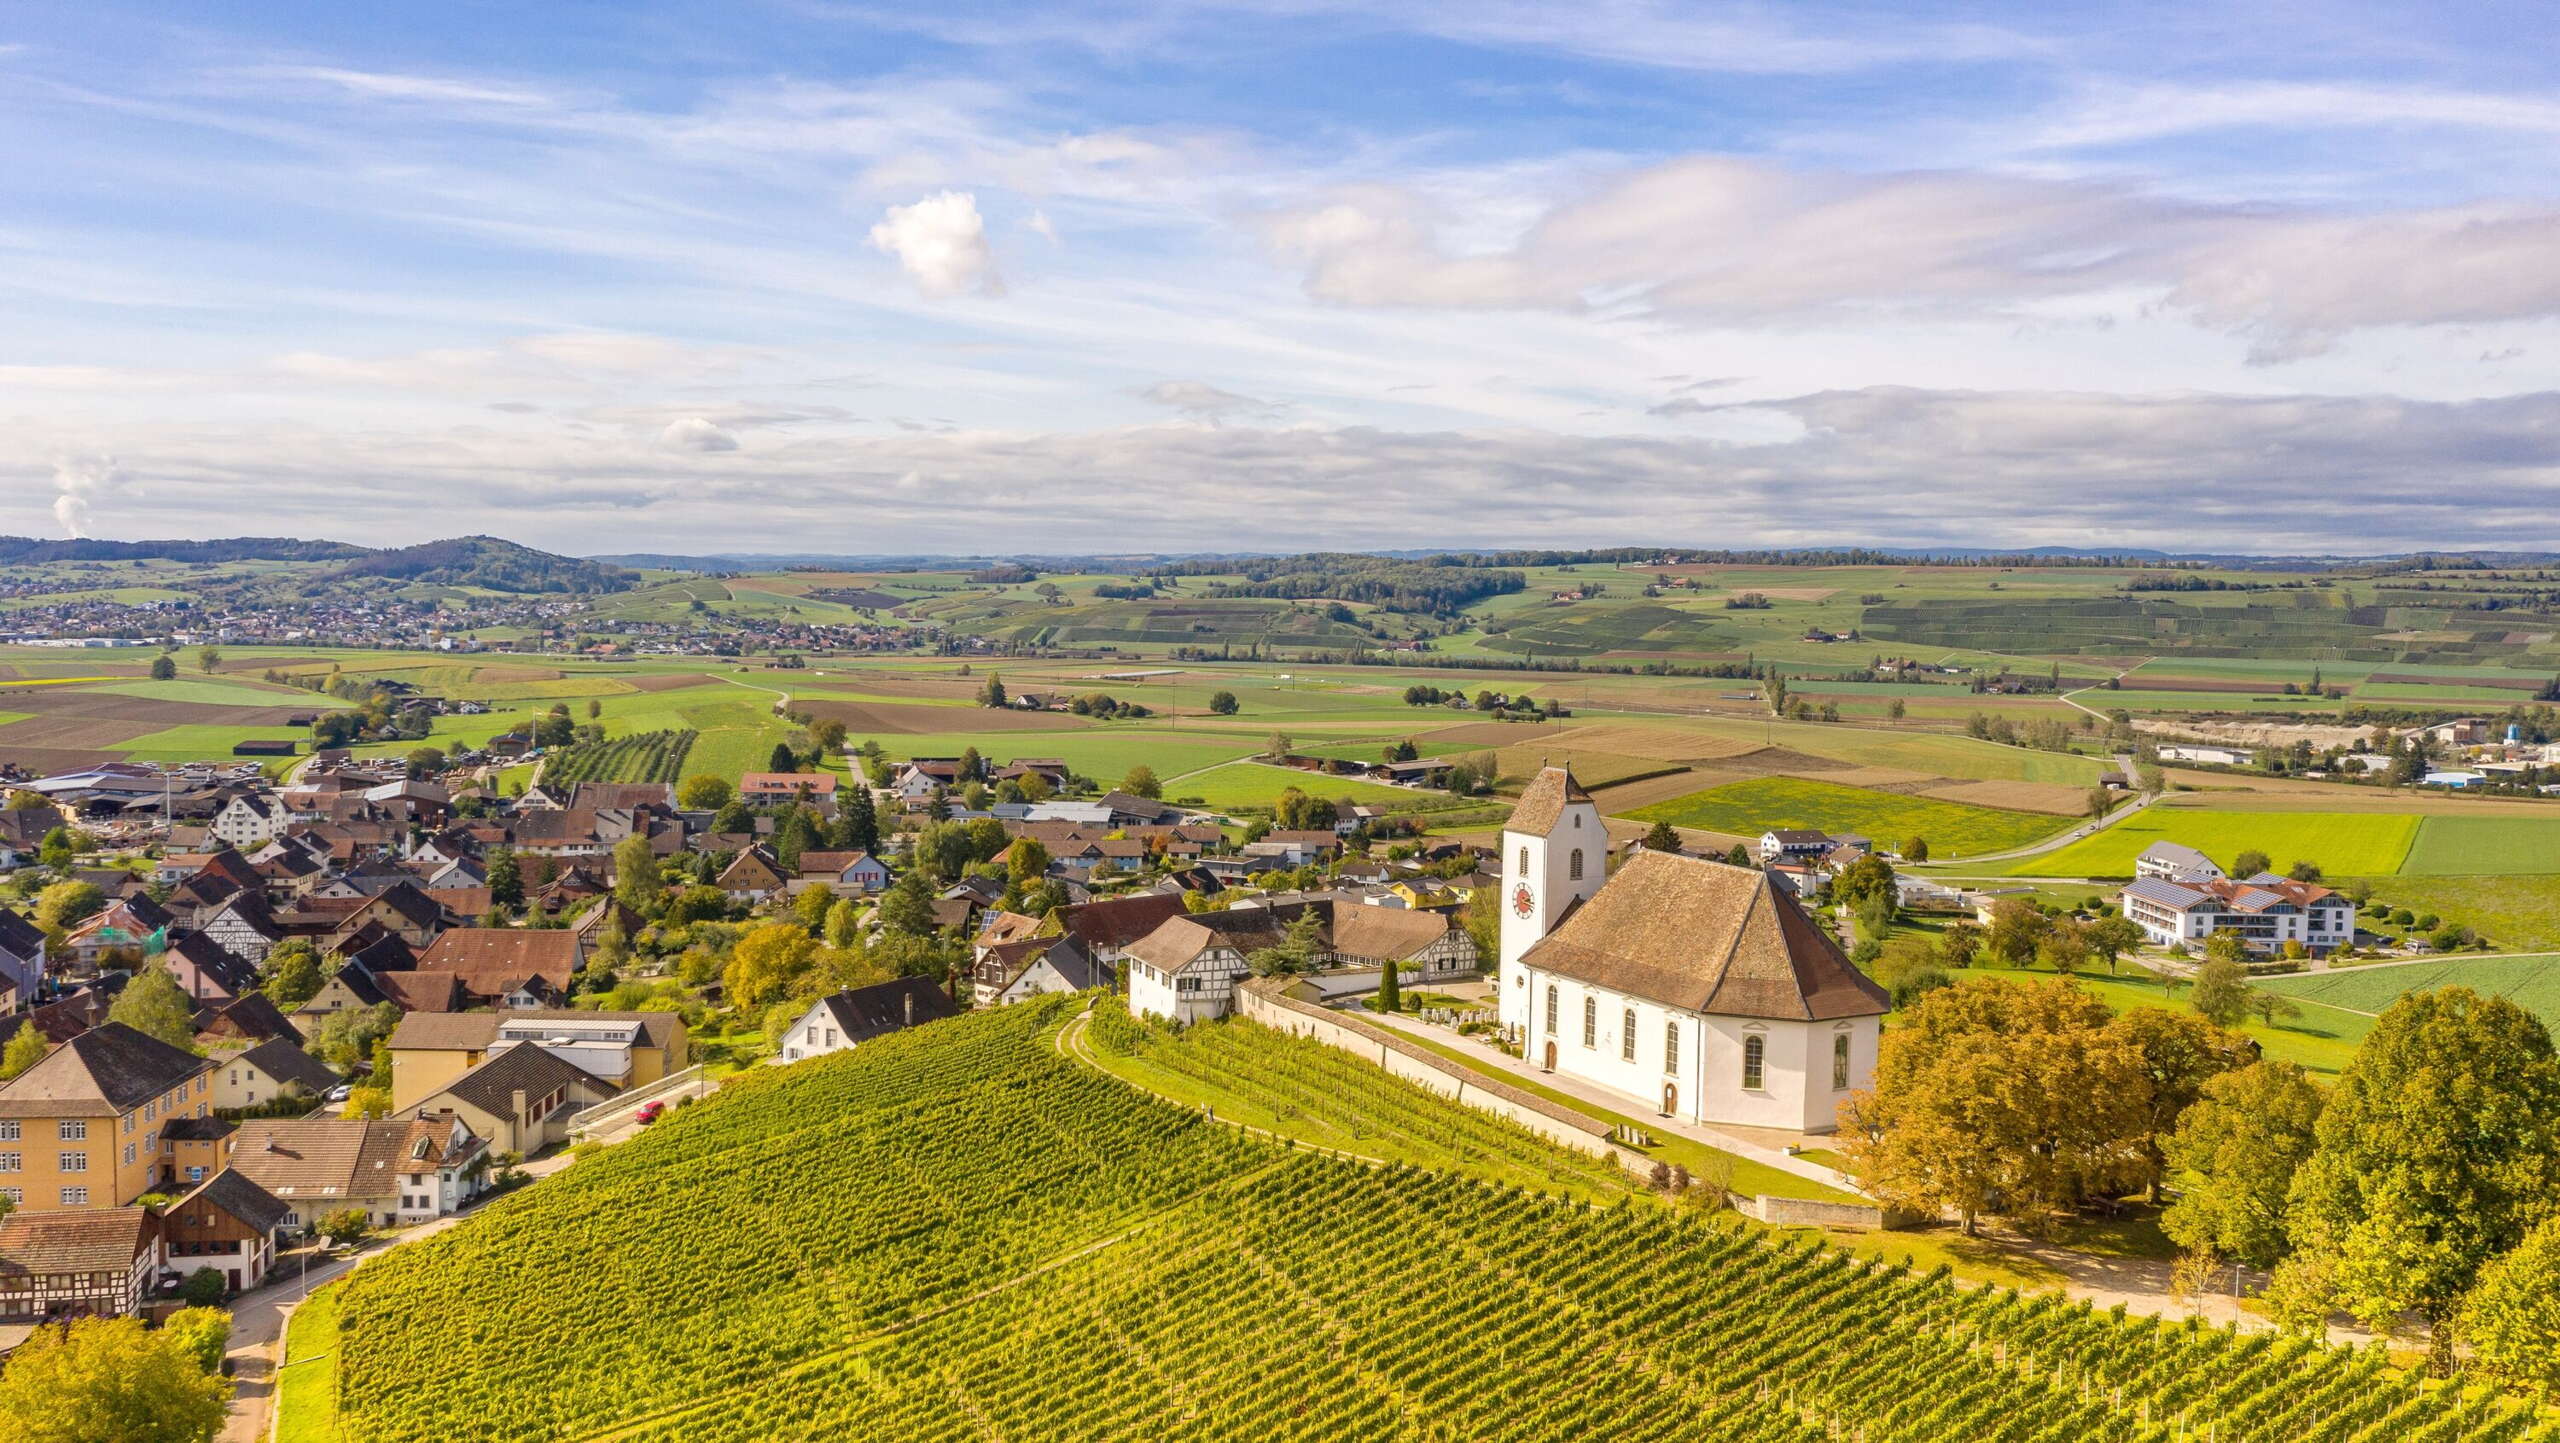 Blick auf das Wilchinger Dorf mit Kirche. Im Vordergrund sieht man Reben und im Hintergrund hat man einem Weitblick auf Dörfer und Landschaft.